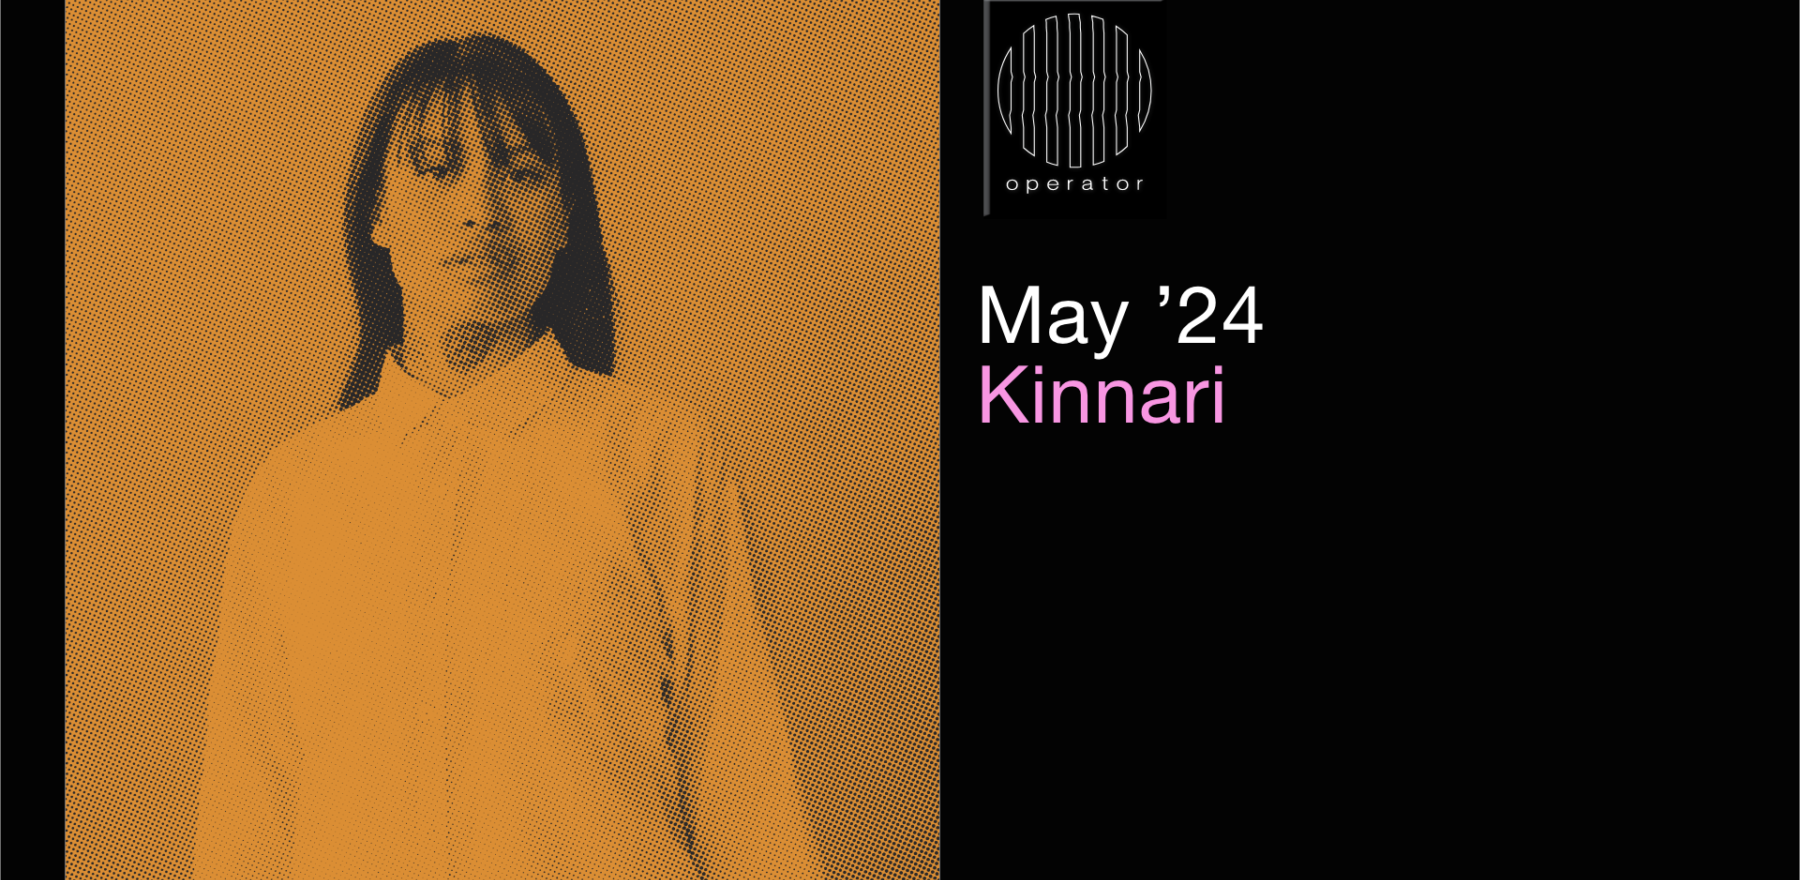 Playlist Mei '24 - Operator invites Kinnari